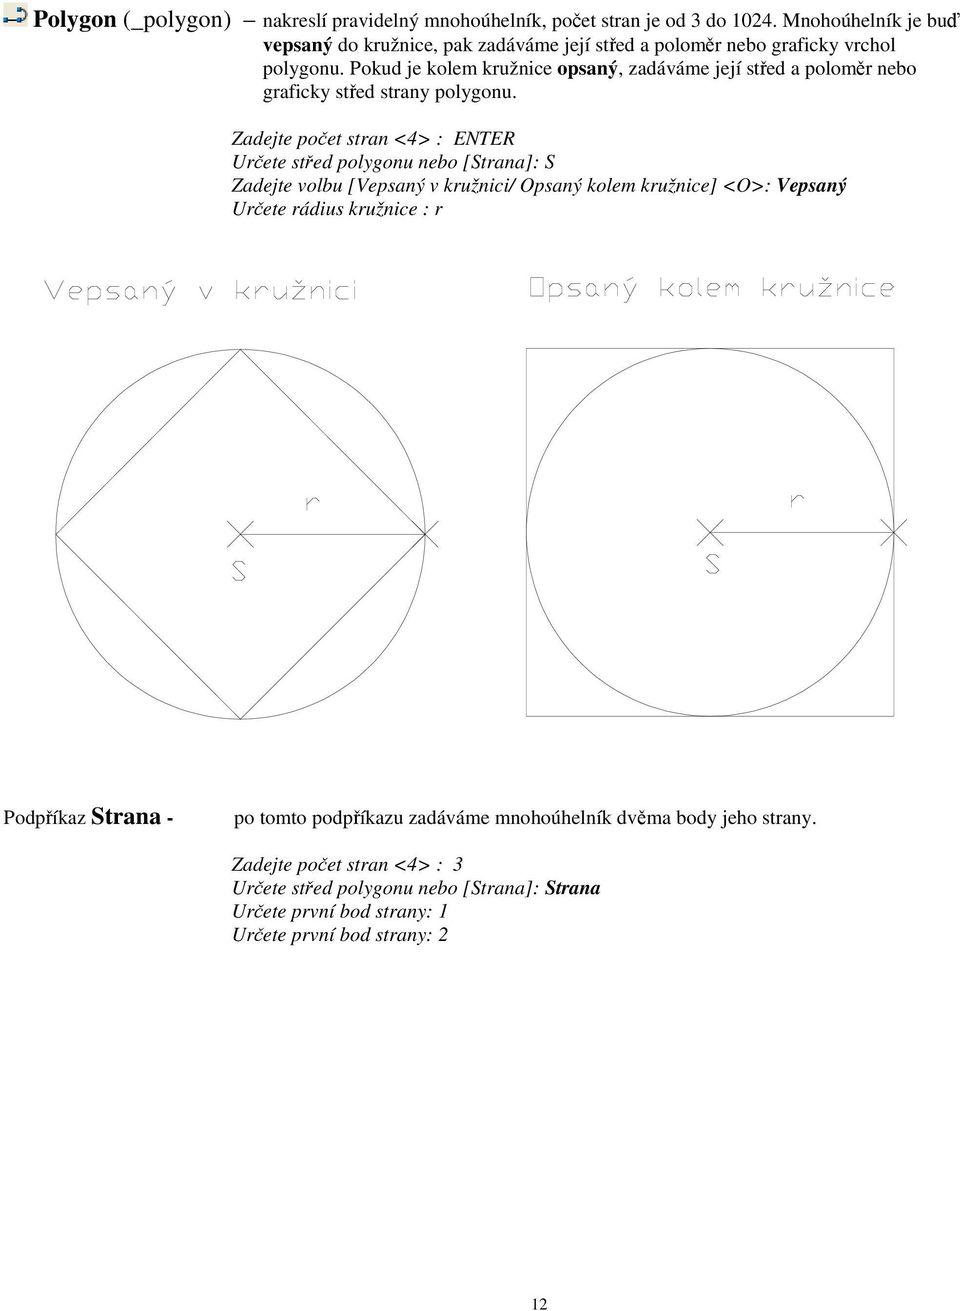 Pokud je kolem kružnice opsaný, zadáváme její sted a polomr nebo graficky sted strany polygonu.